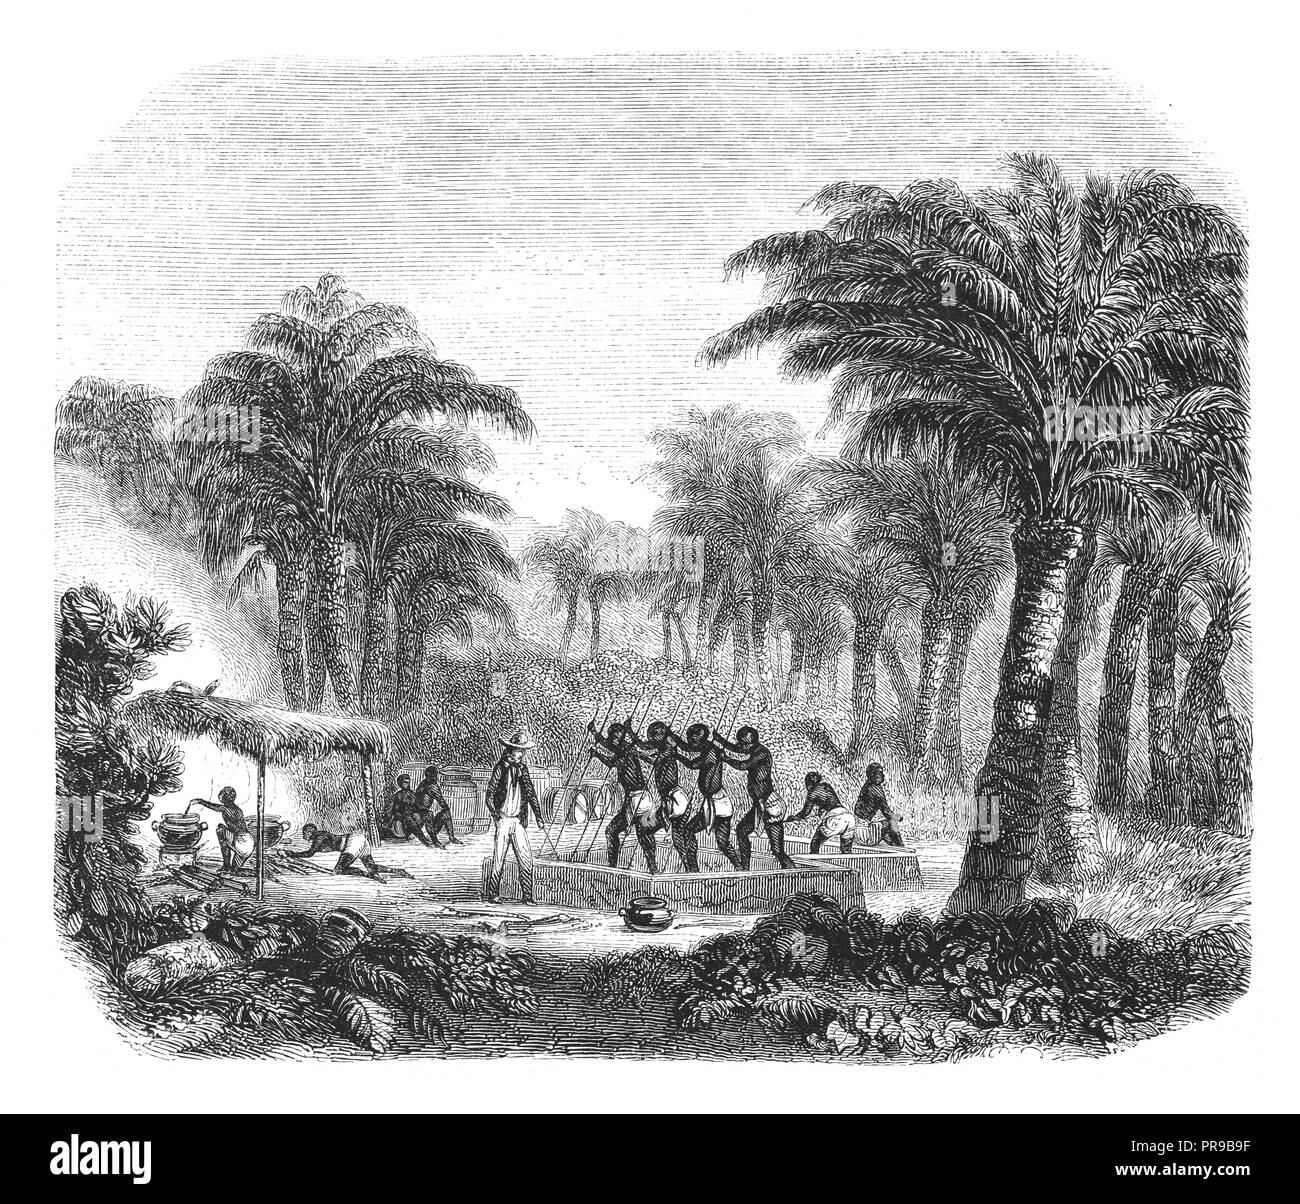 19ème siècle illustration de production d'huile de palme dans Whyda, la Guinée, la Côte des Esclaves. - Dessin d'après nature, par Nousveaux. Oeuvre originale publiée dans Banque D'Images